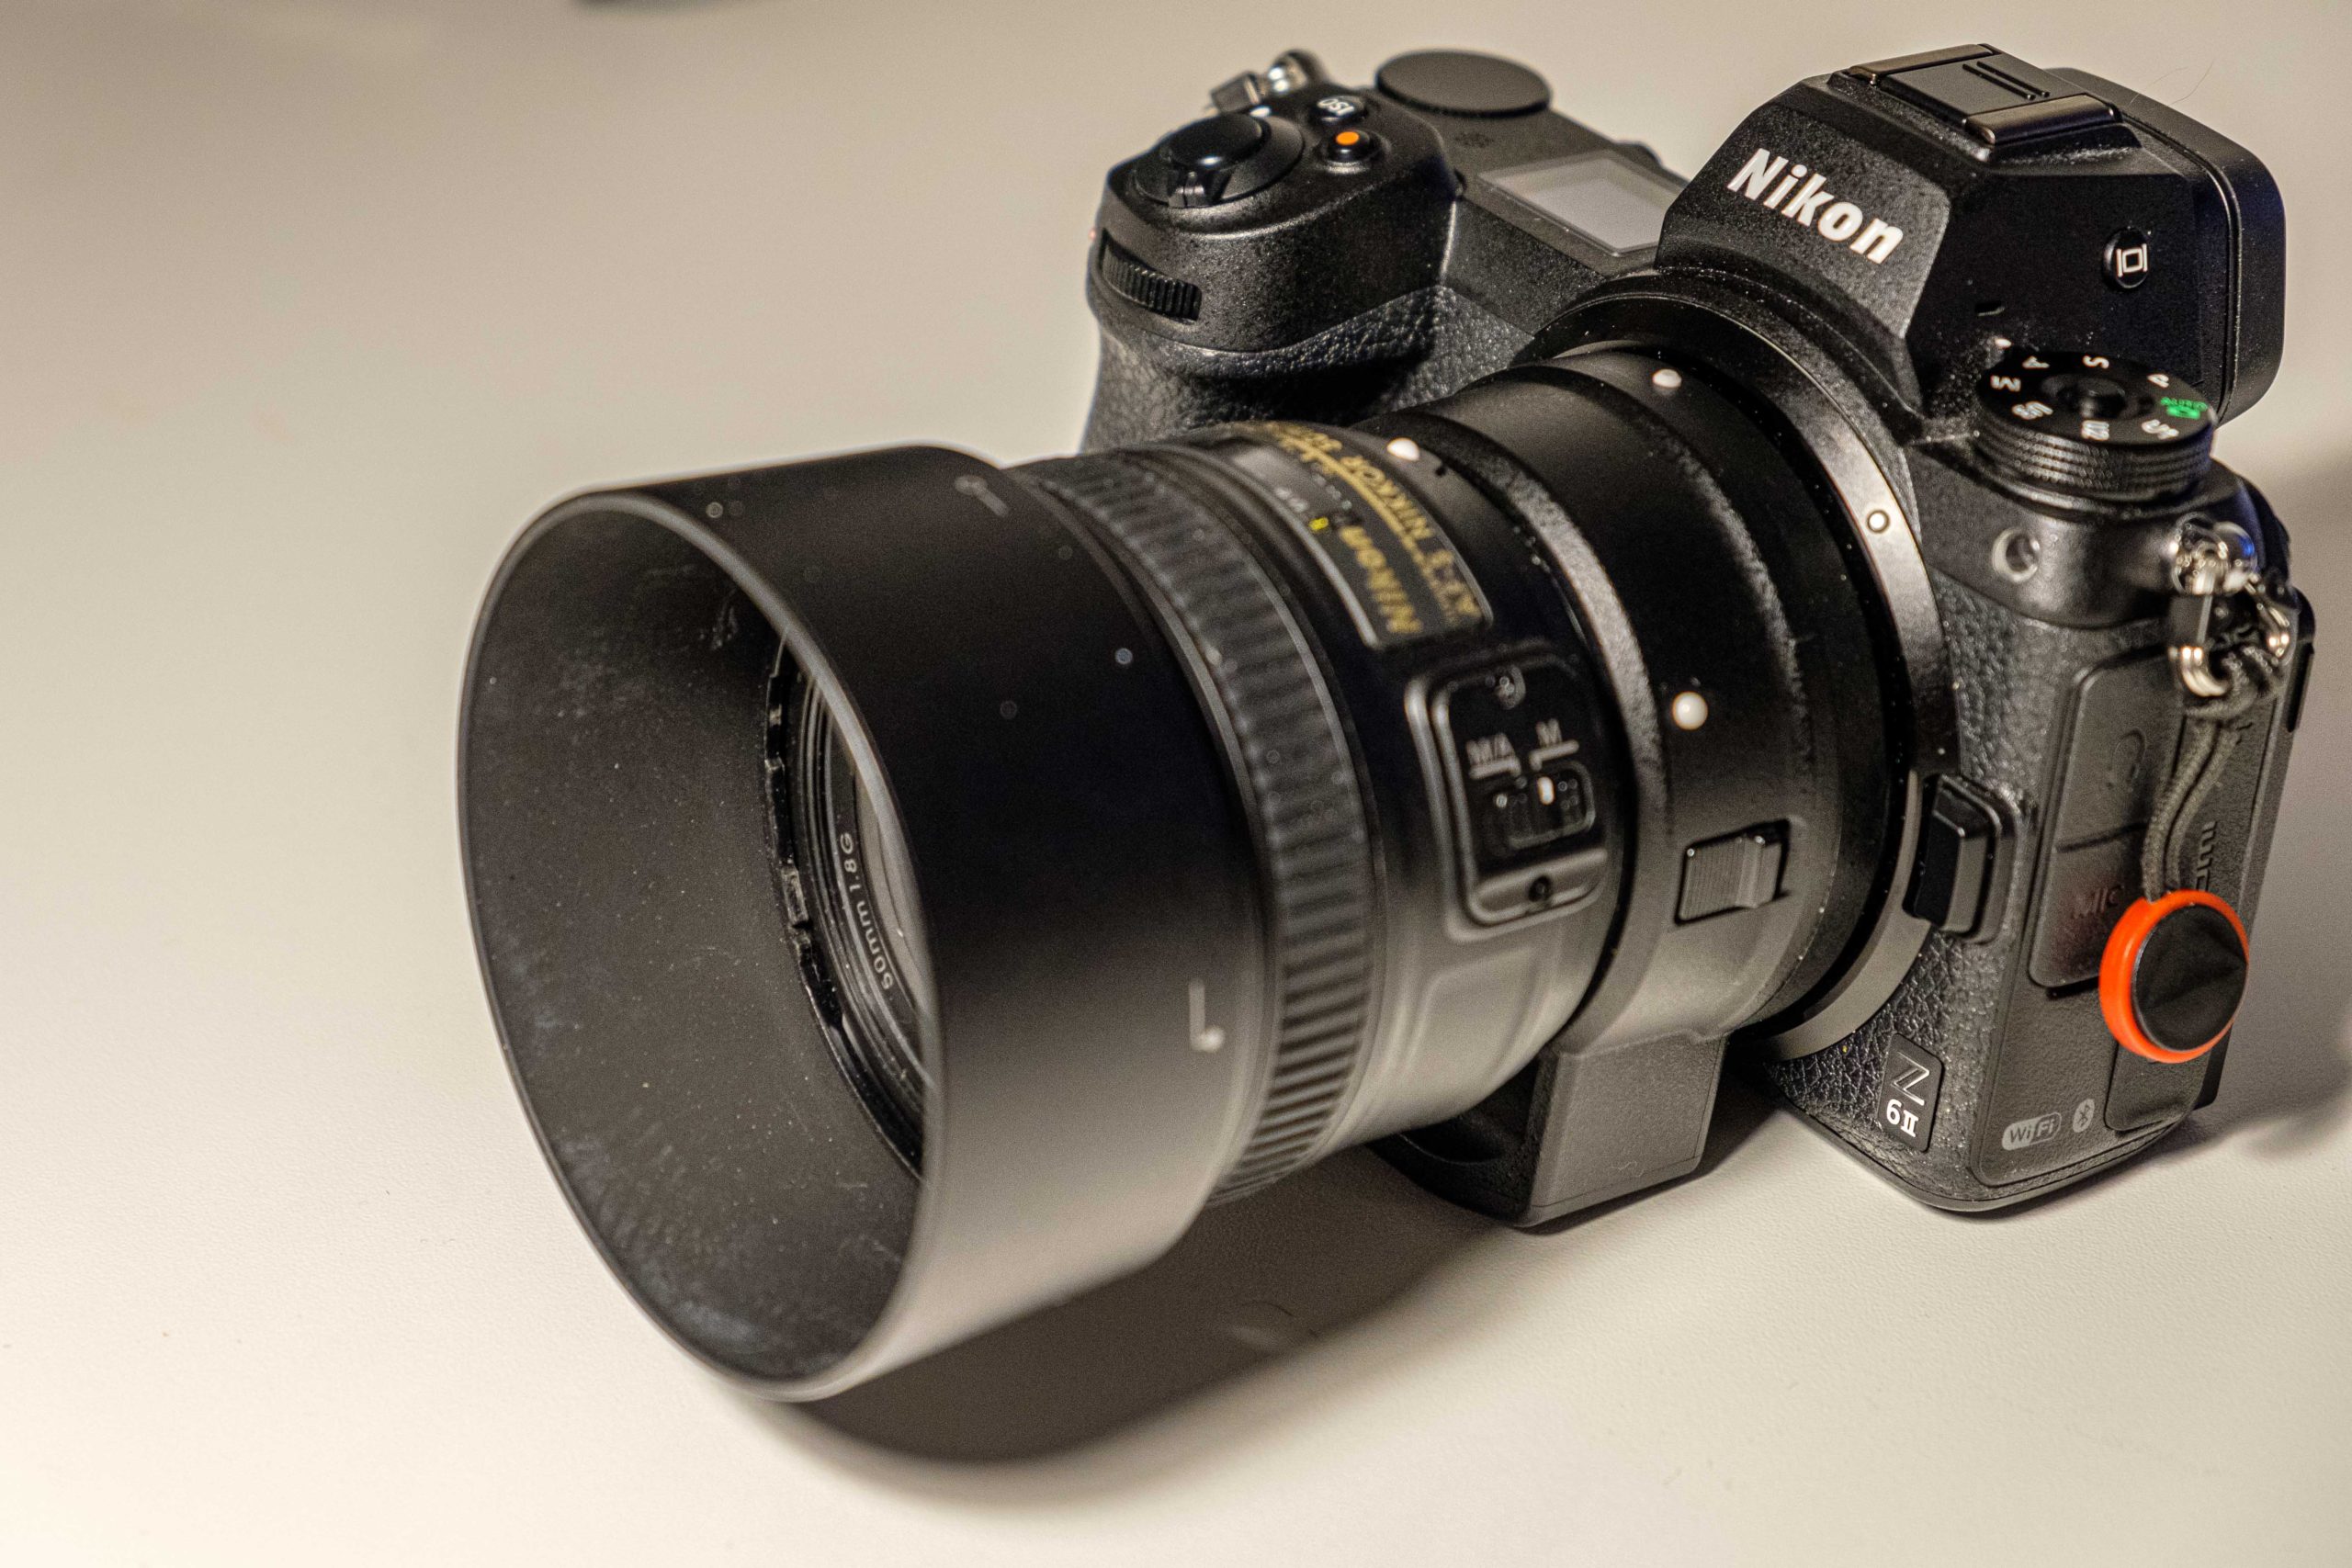 Nikon Z6ii vs Z6 – Which one for you?